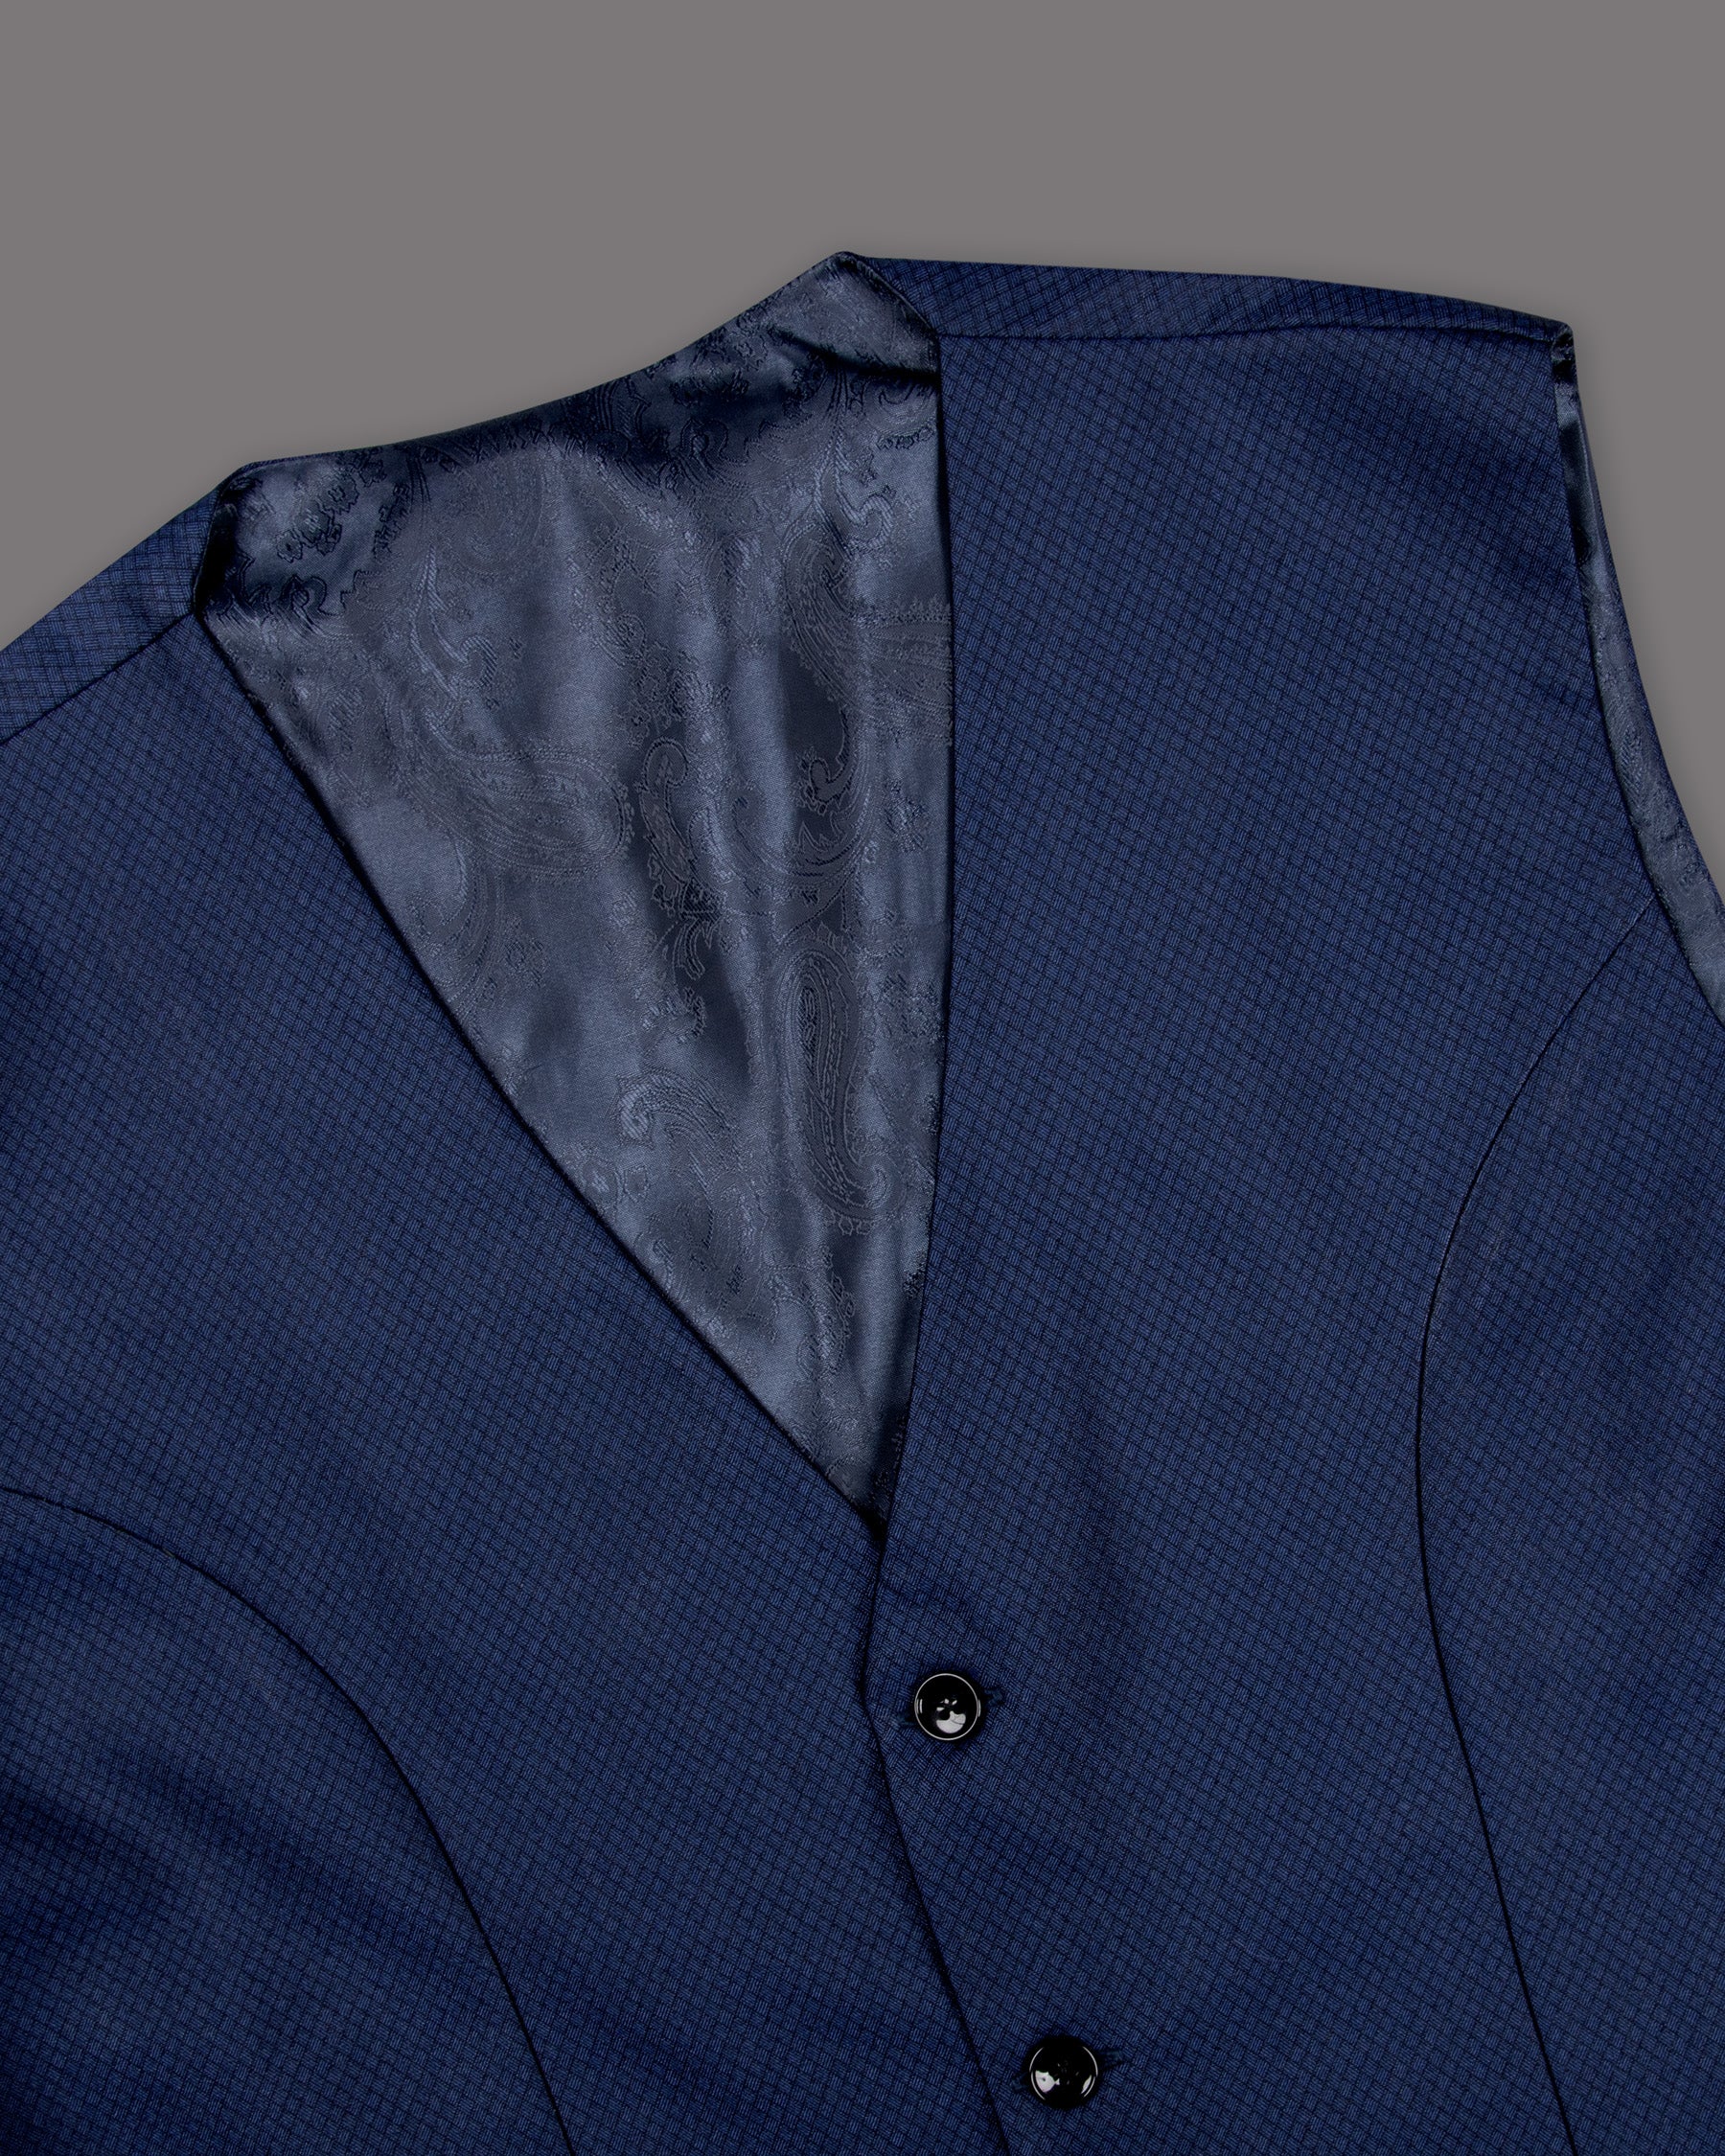 Port Gore Blue Subtle Textured Woolrich Tuxedo Suit